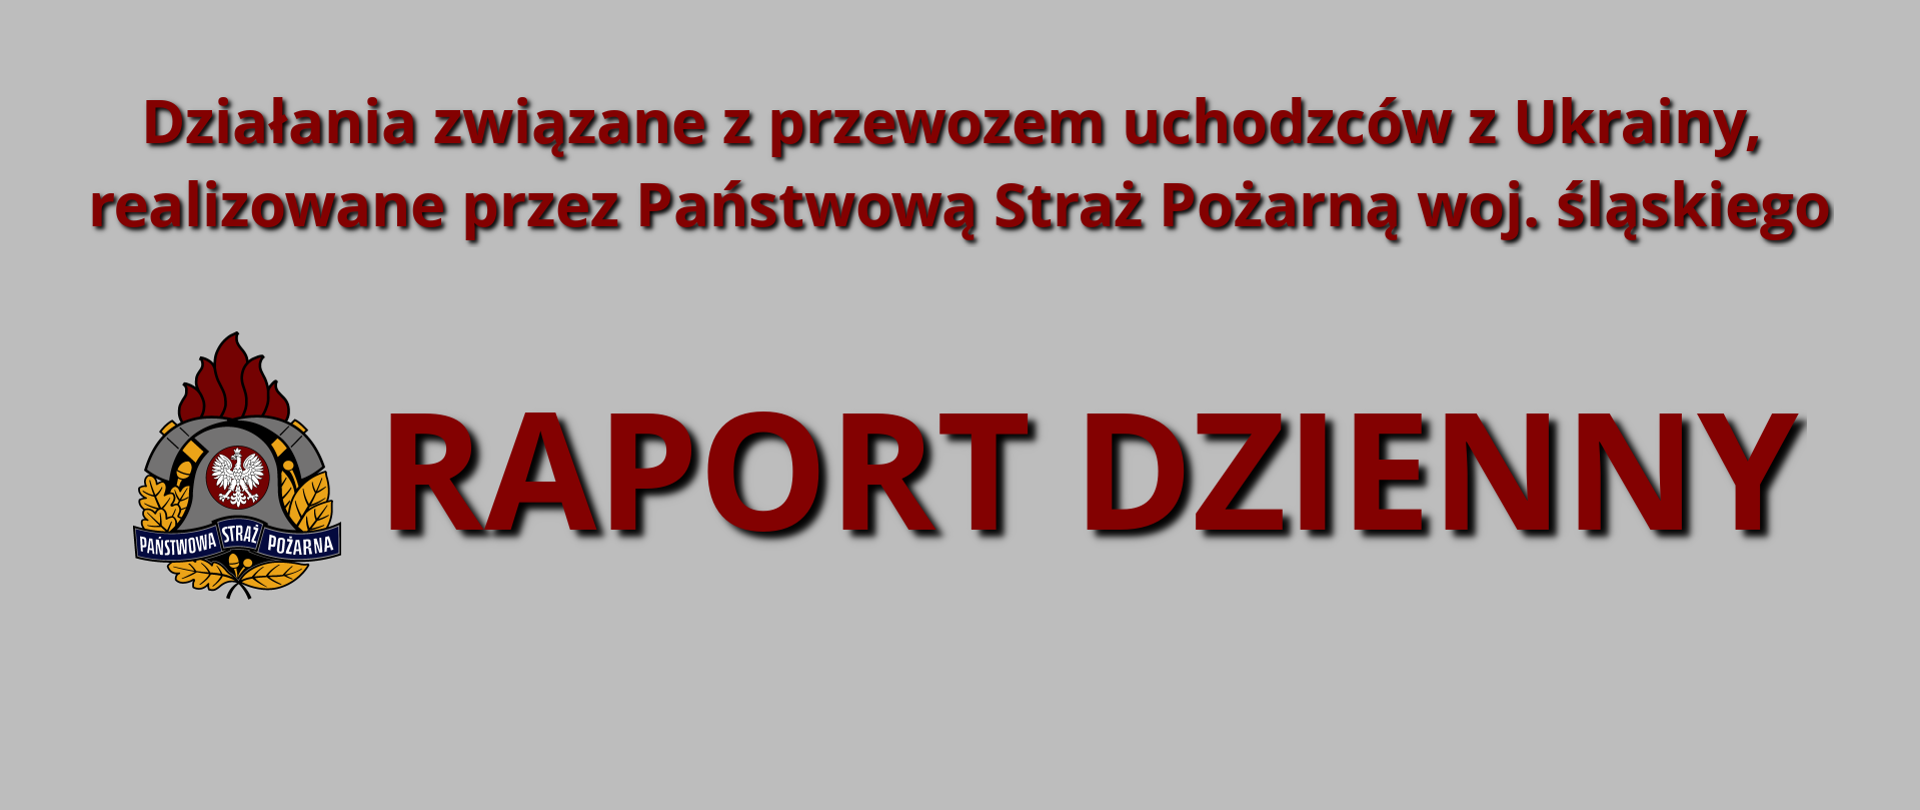 Ilustracja na szarym tle napis Działania związane przewozem uchodźców z Ukrainy, realizowane przez PSP województwa śląskiego. Na dole po lewej stronie logo PSP i napis Raport Dzienny